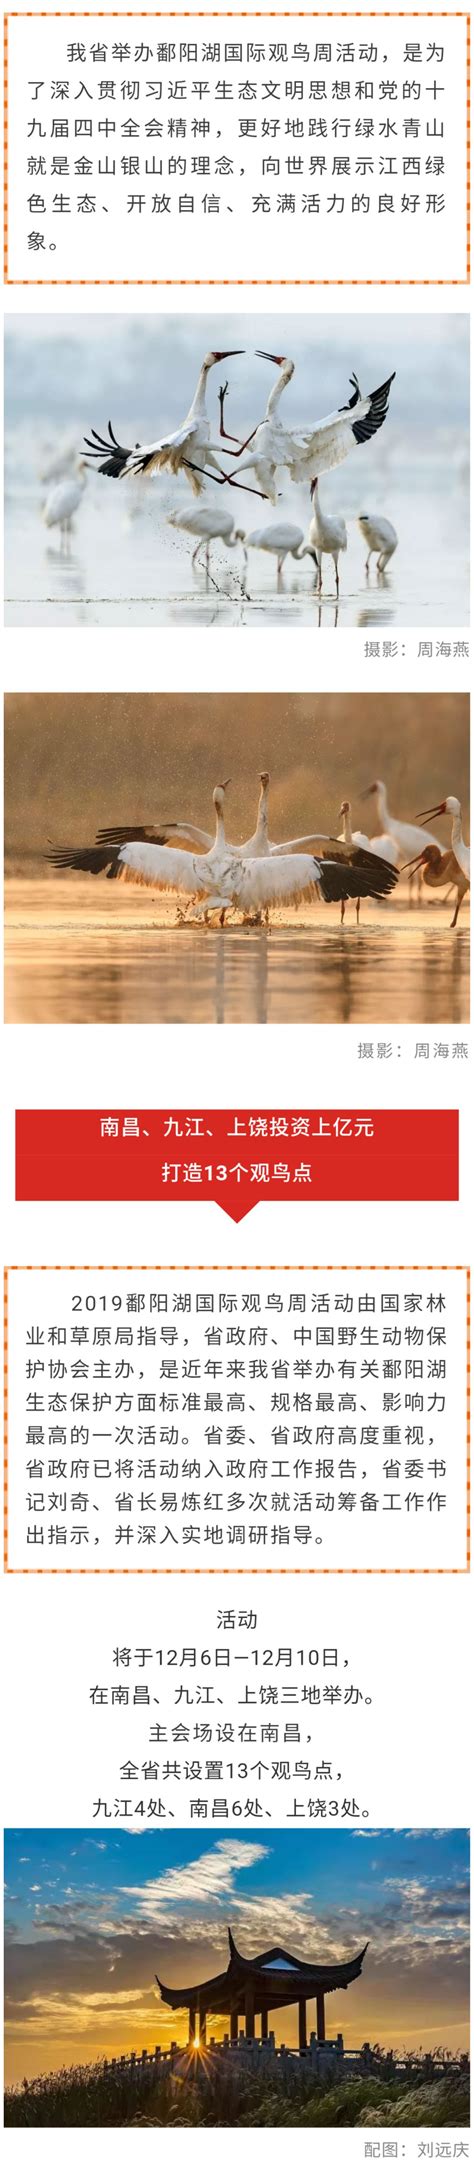 首届鄱阳湖国际观鸟周12月江西举办